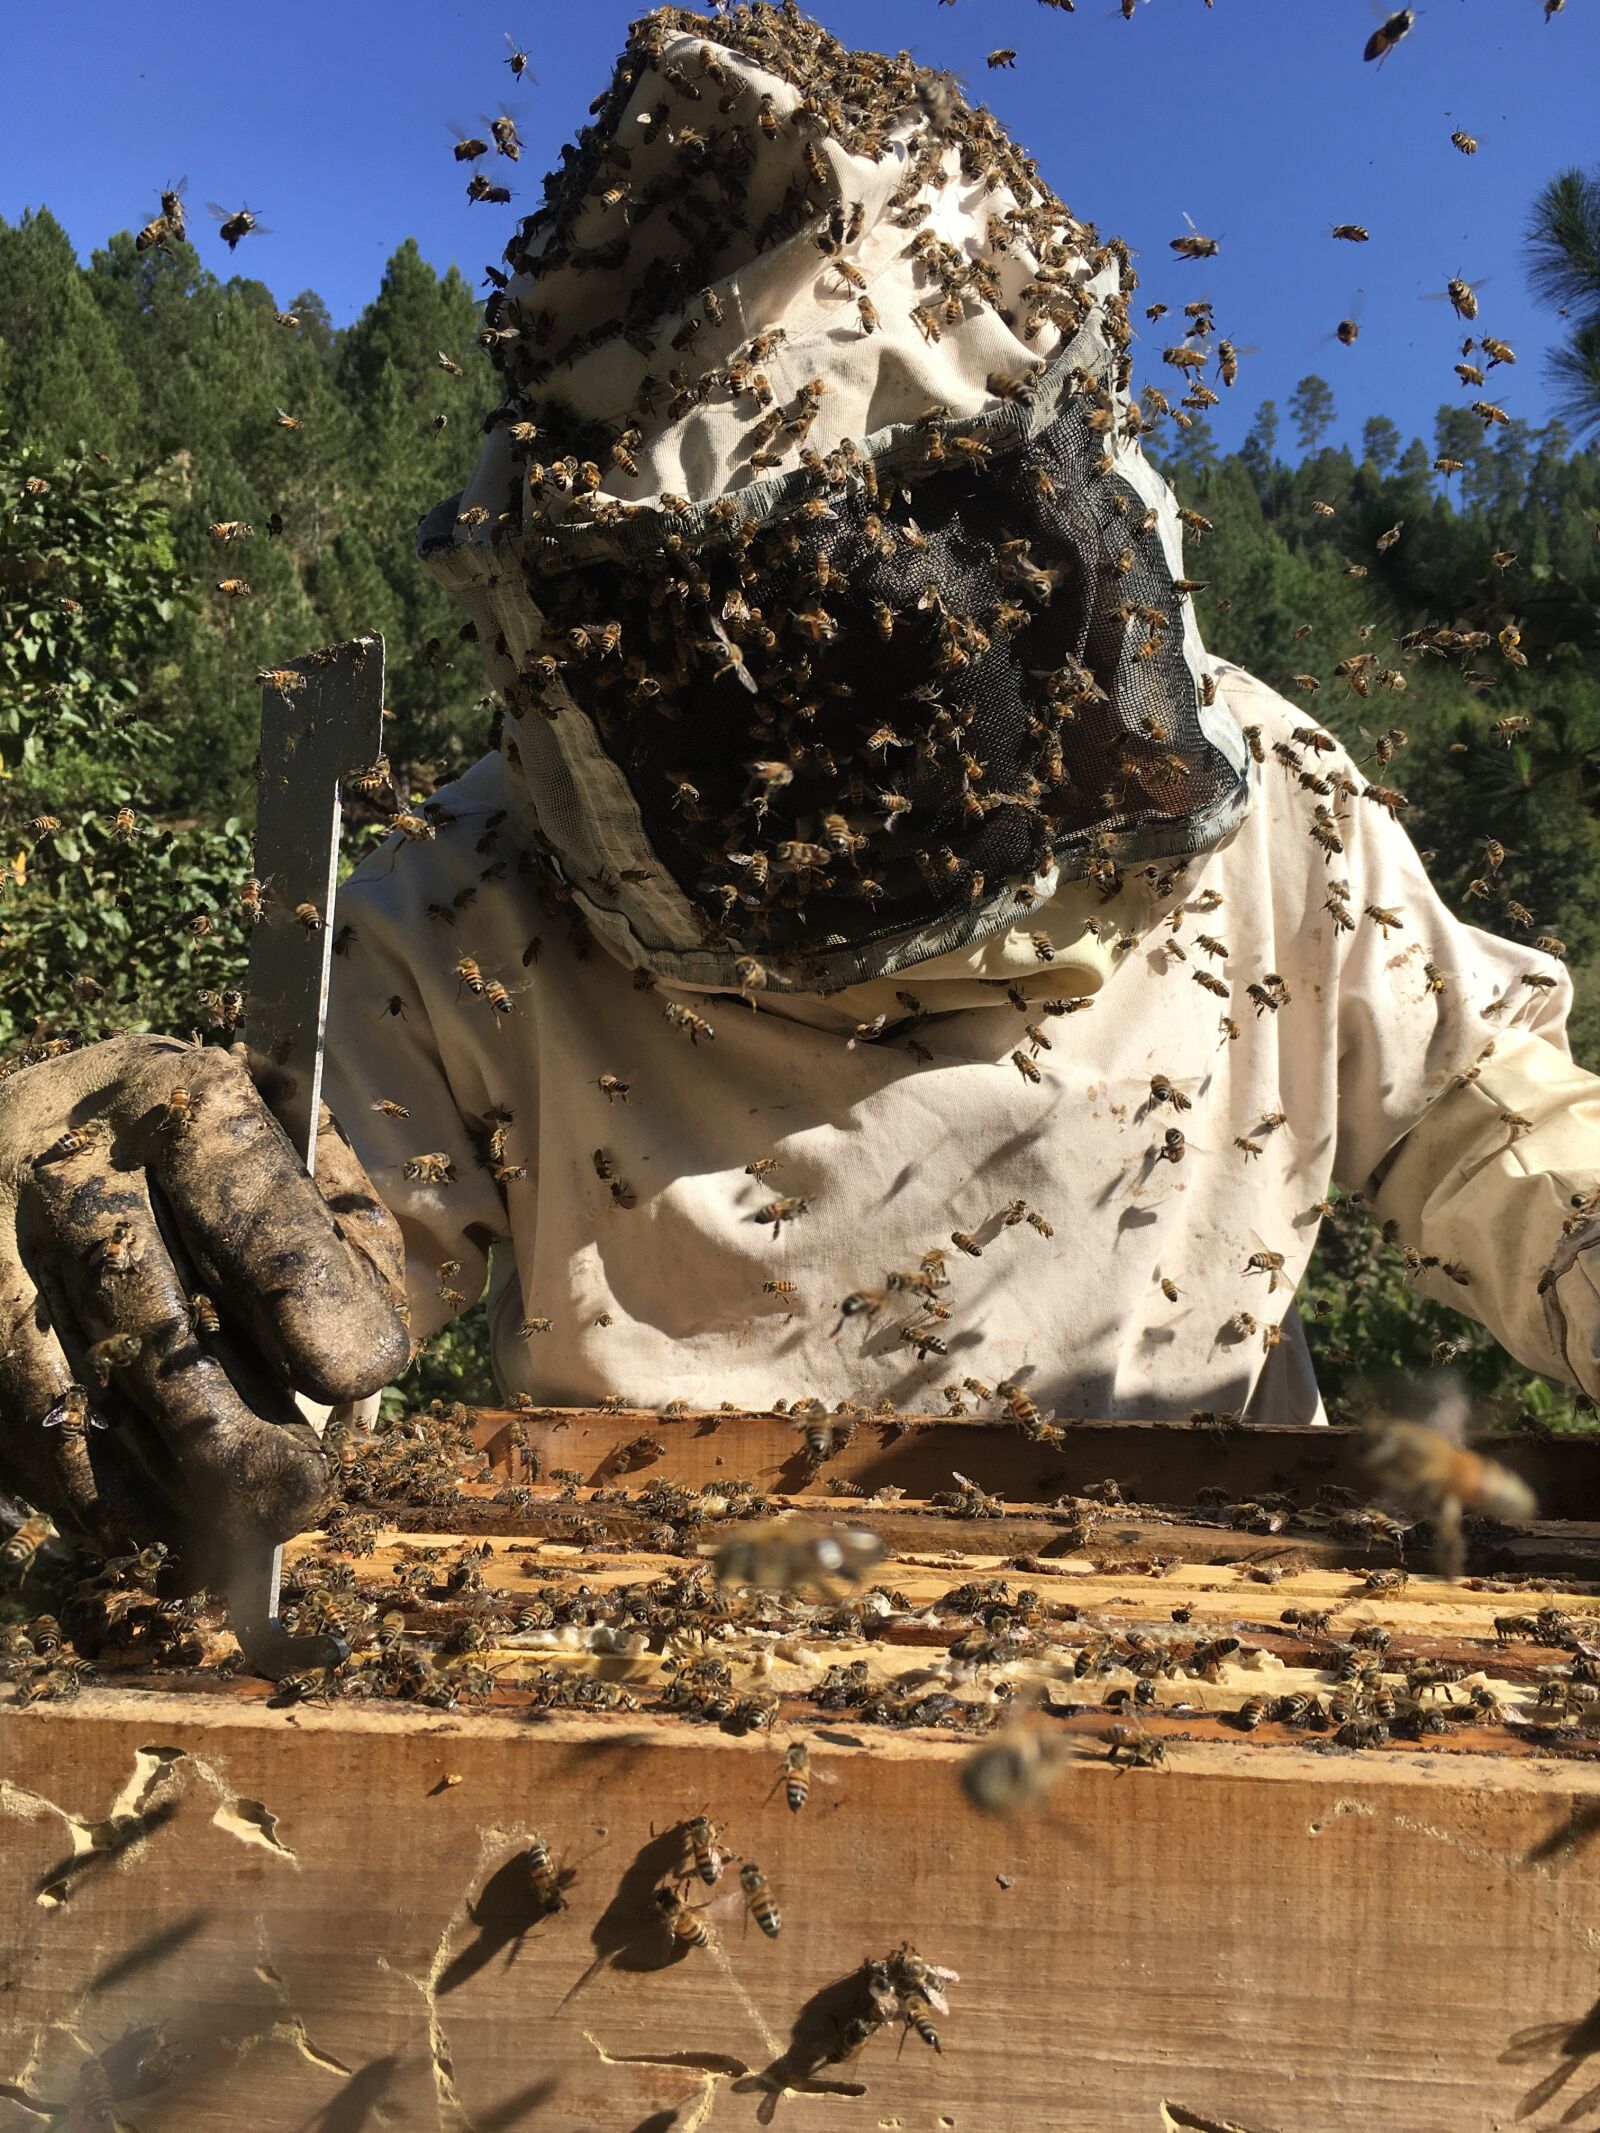 Apple iPad Pro sample photo. Beekeeping, bees, ara photography